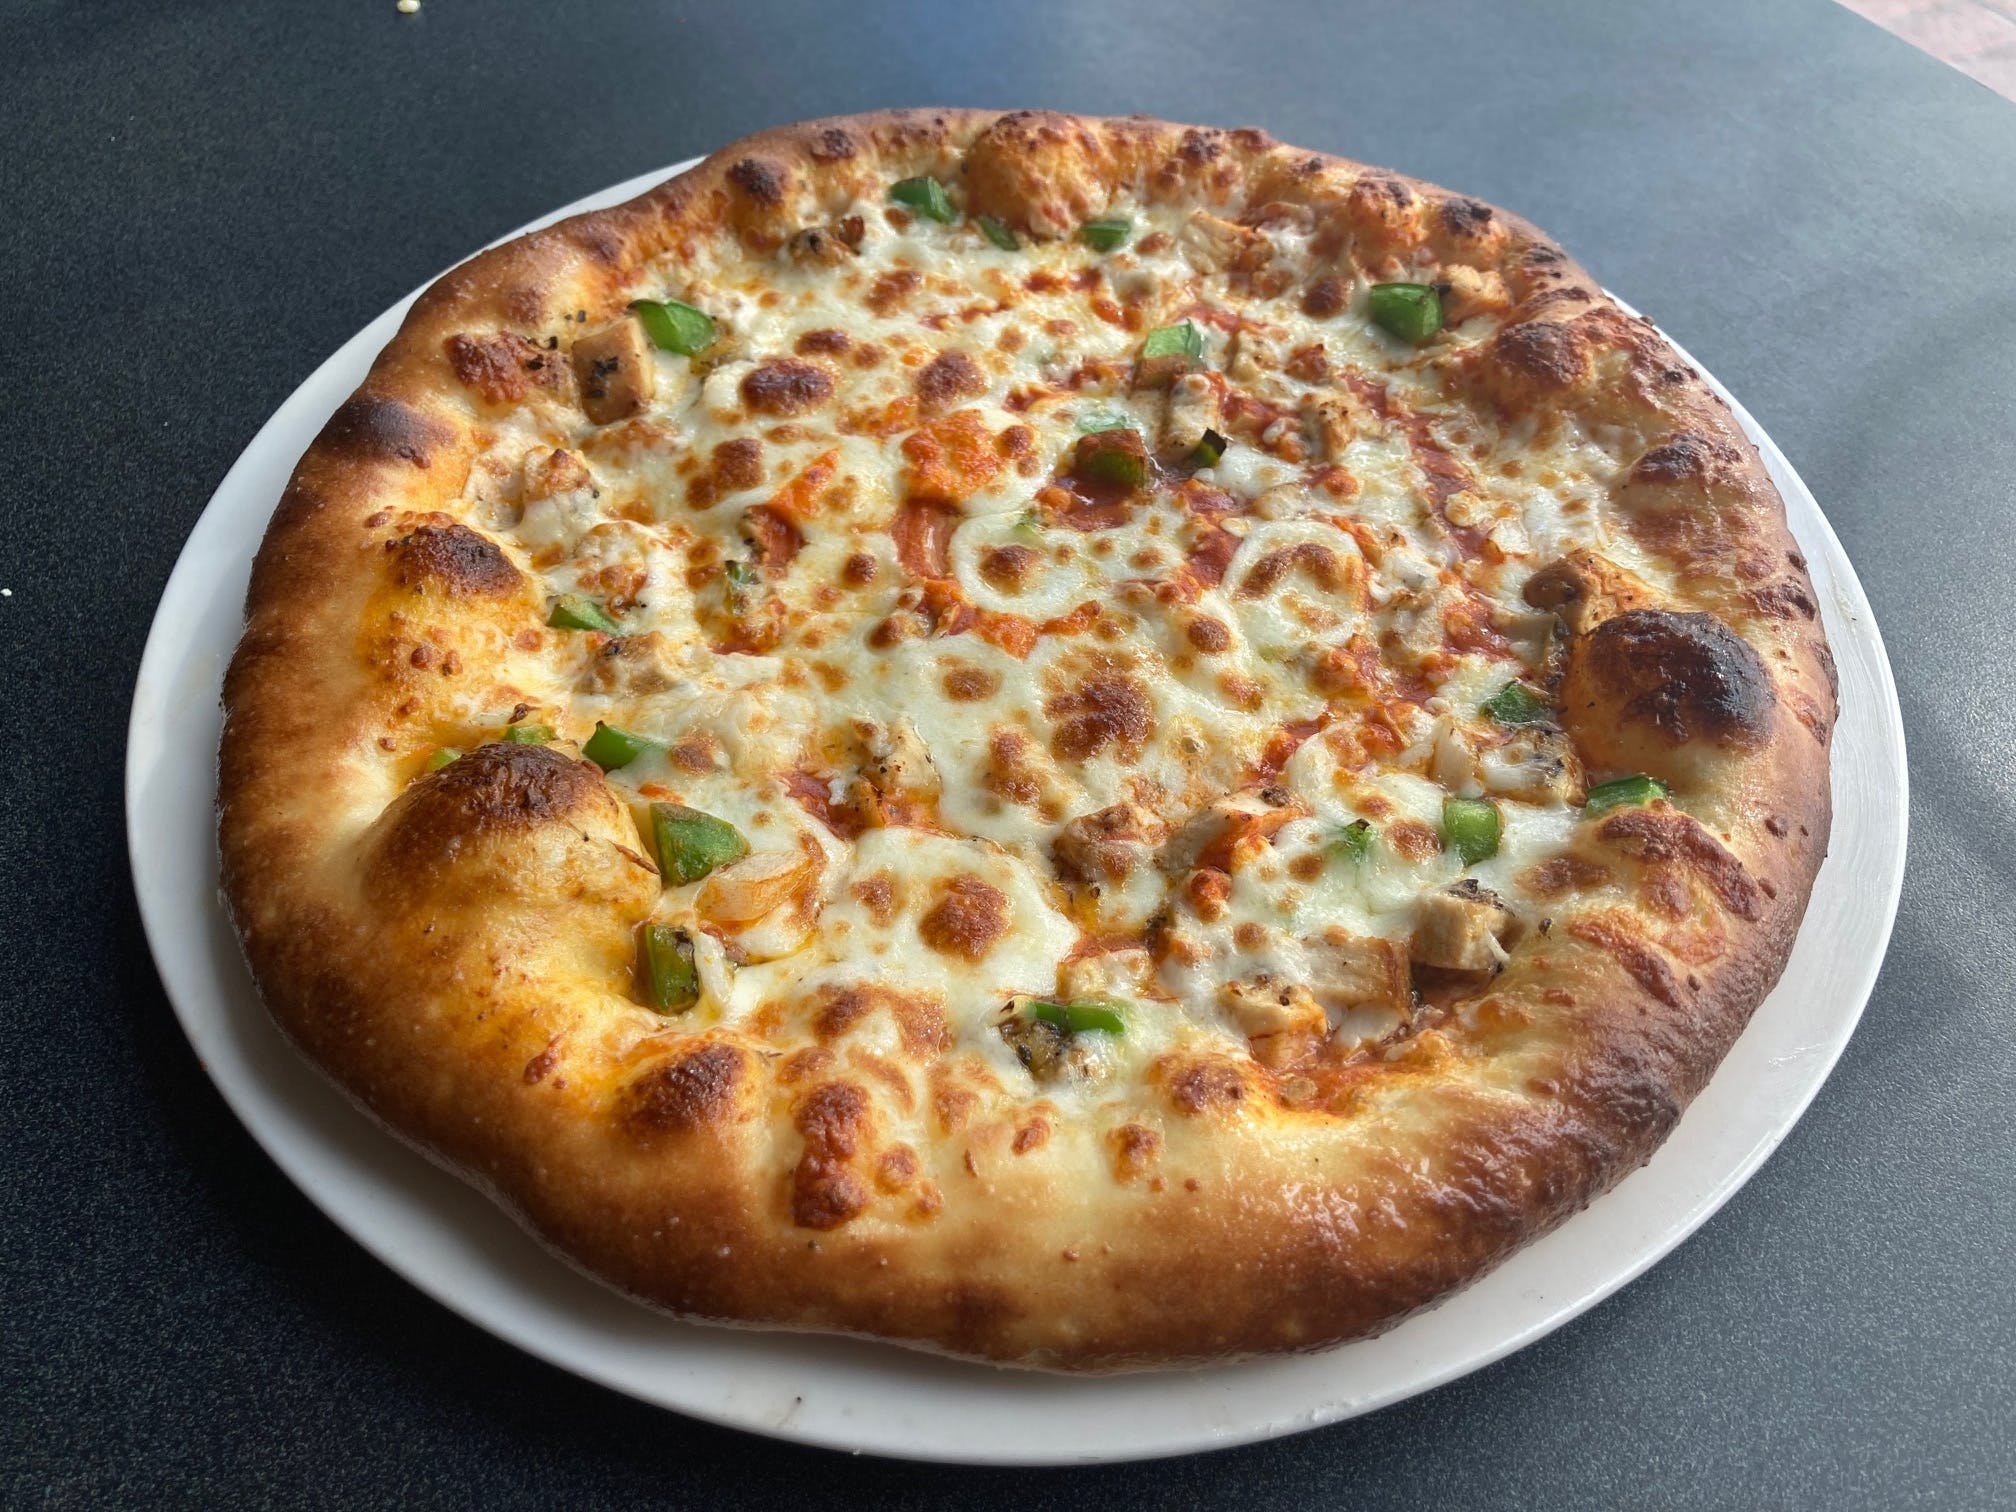 Sicilia Pizza & Kitchen - Salt Lake City - Menu & Hours - Order Delivery  (5% off)